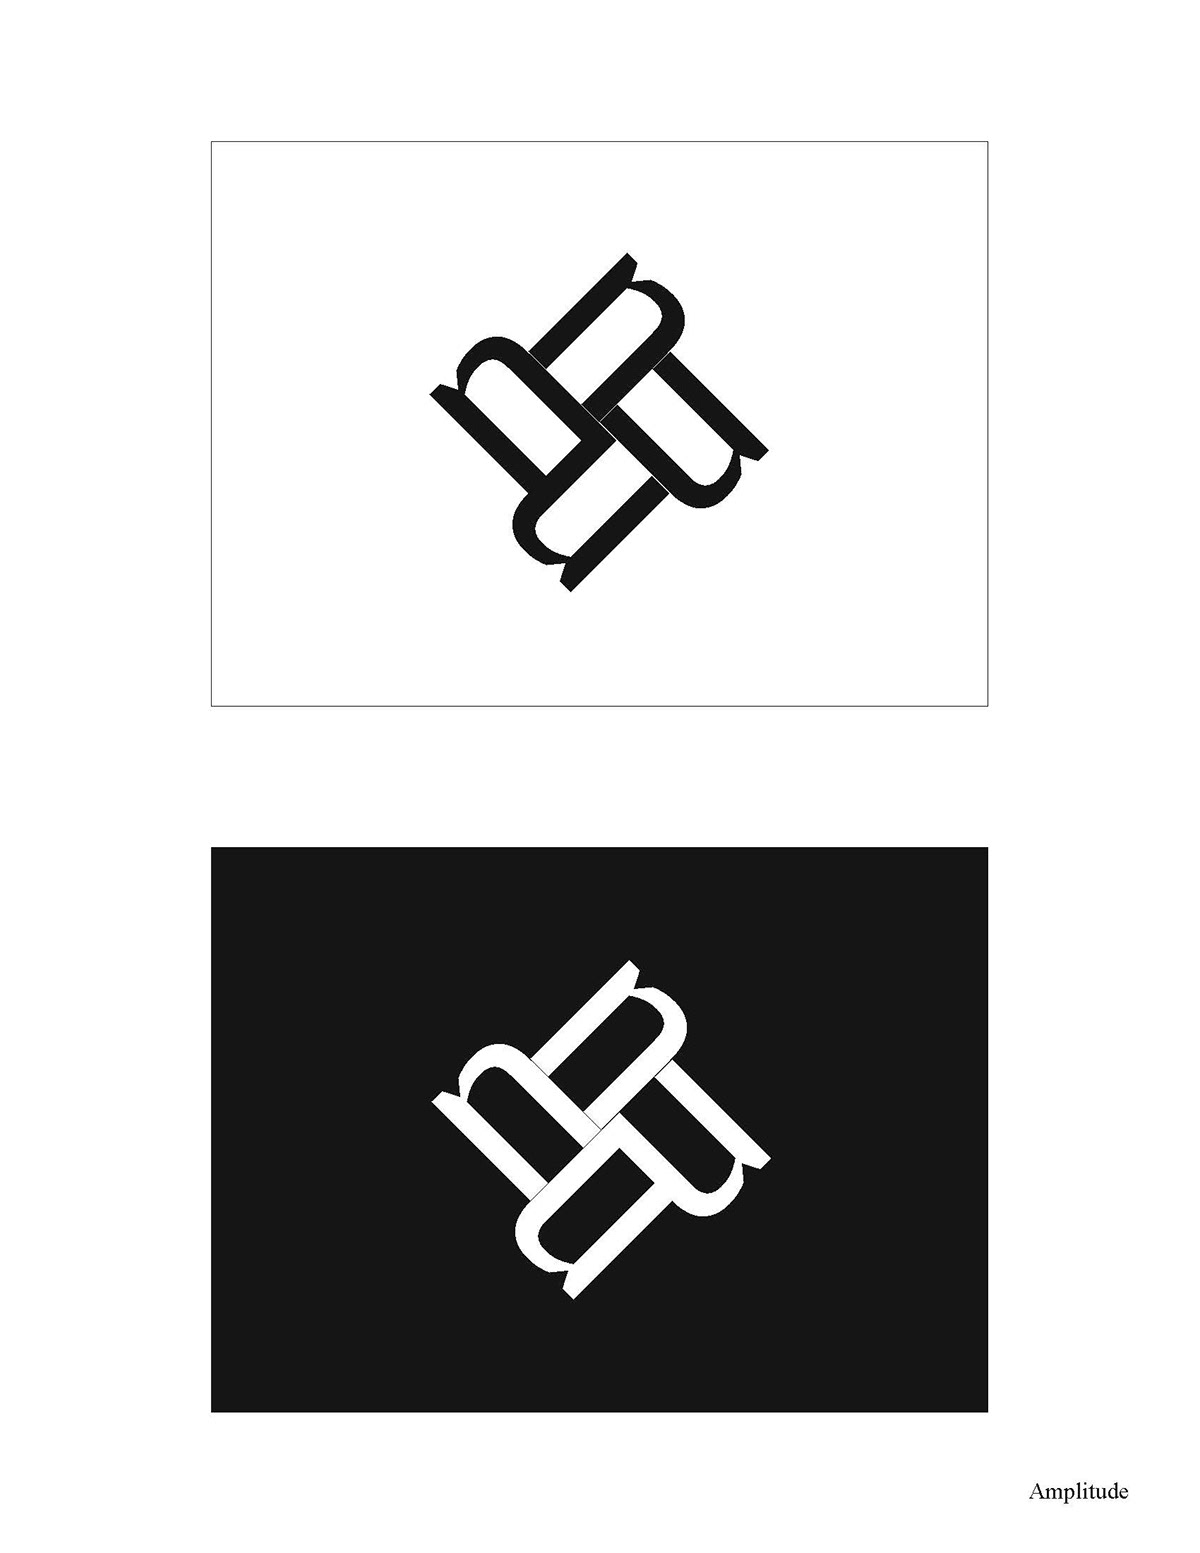 risd symbols design